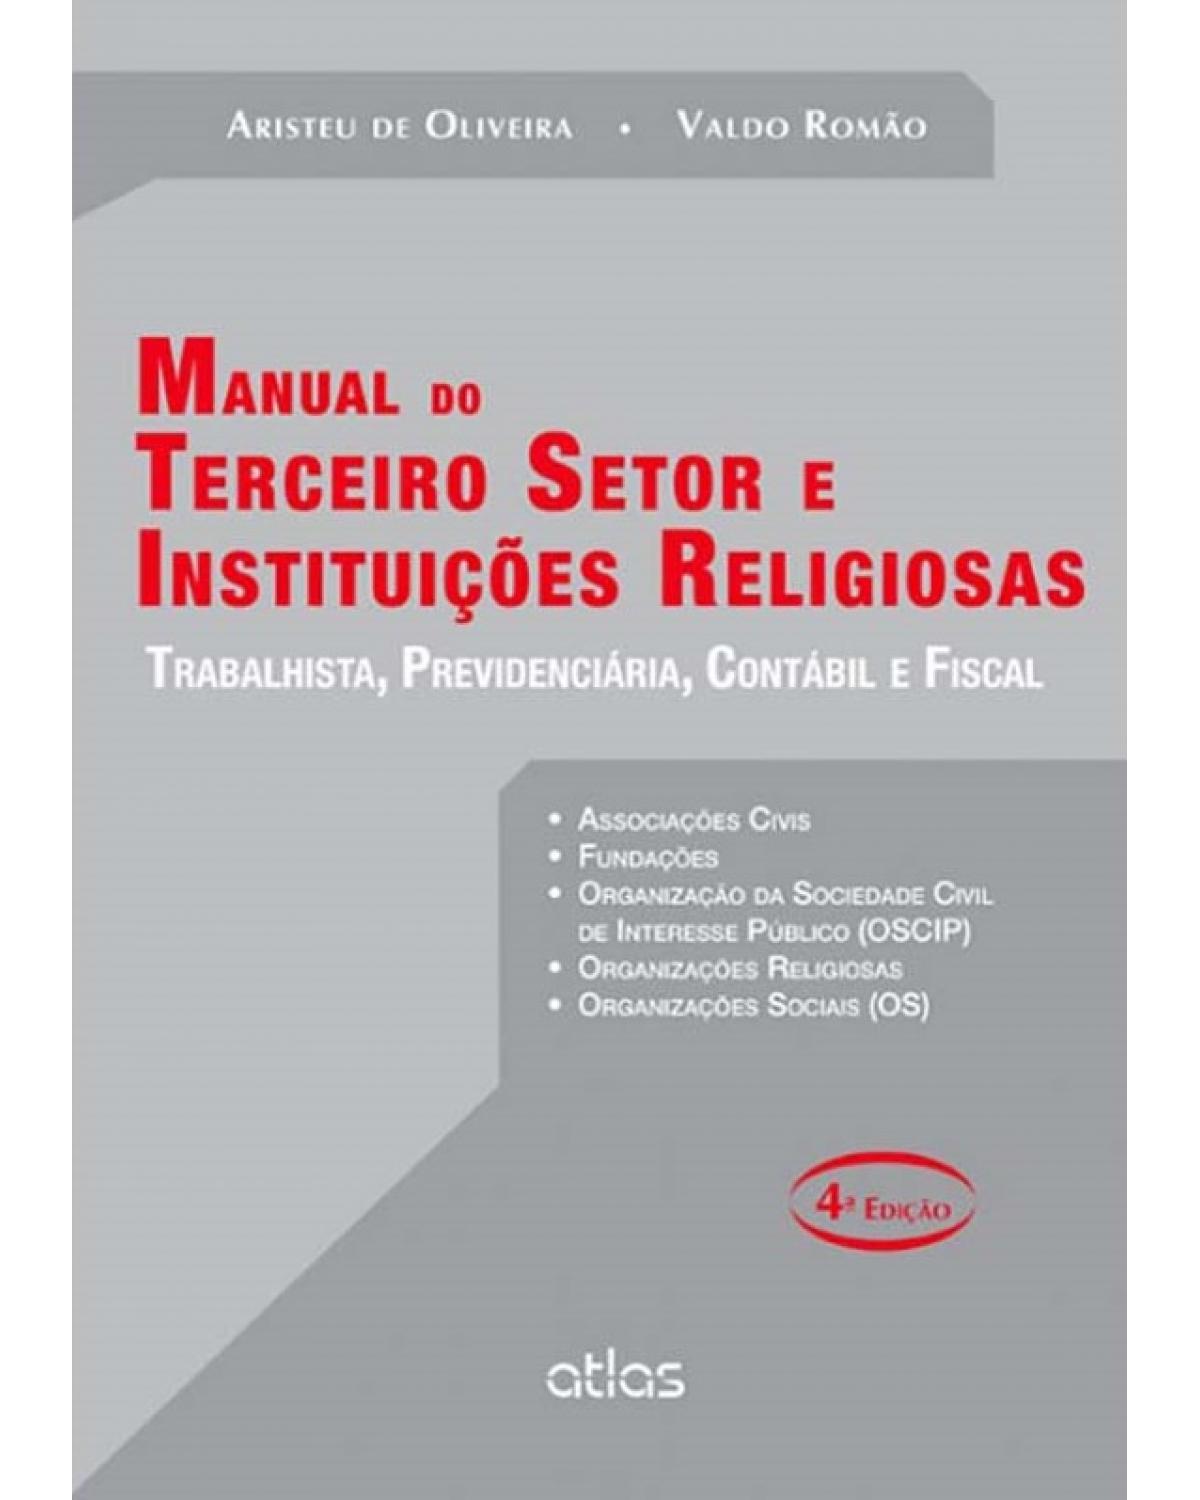 Manual do terceiro setor e instituições religiosas - Trabalhista, previdenciária, contábil e fiscal - 4ª Edição | 2014